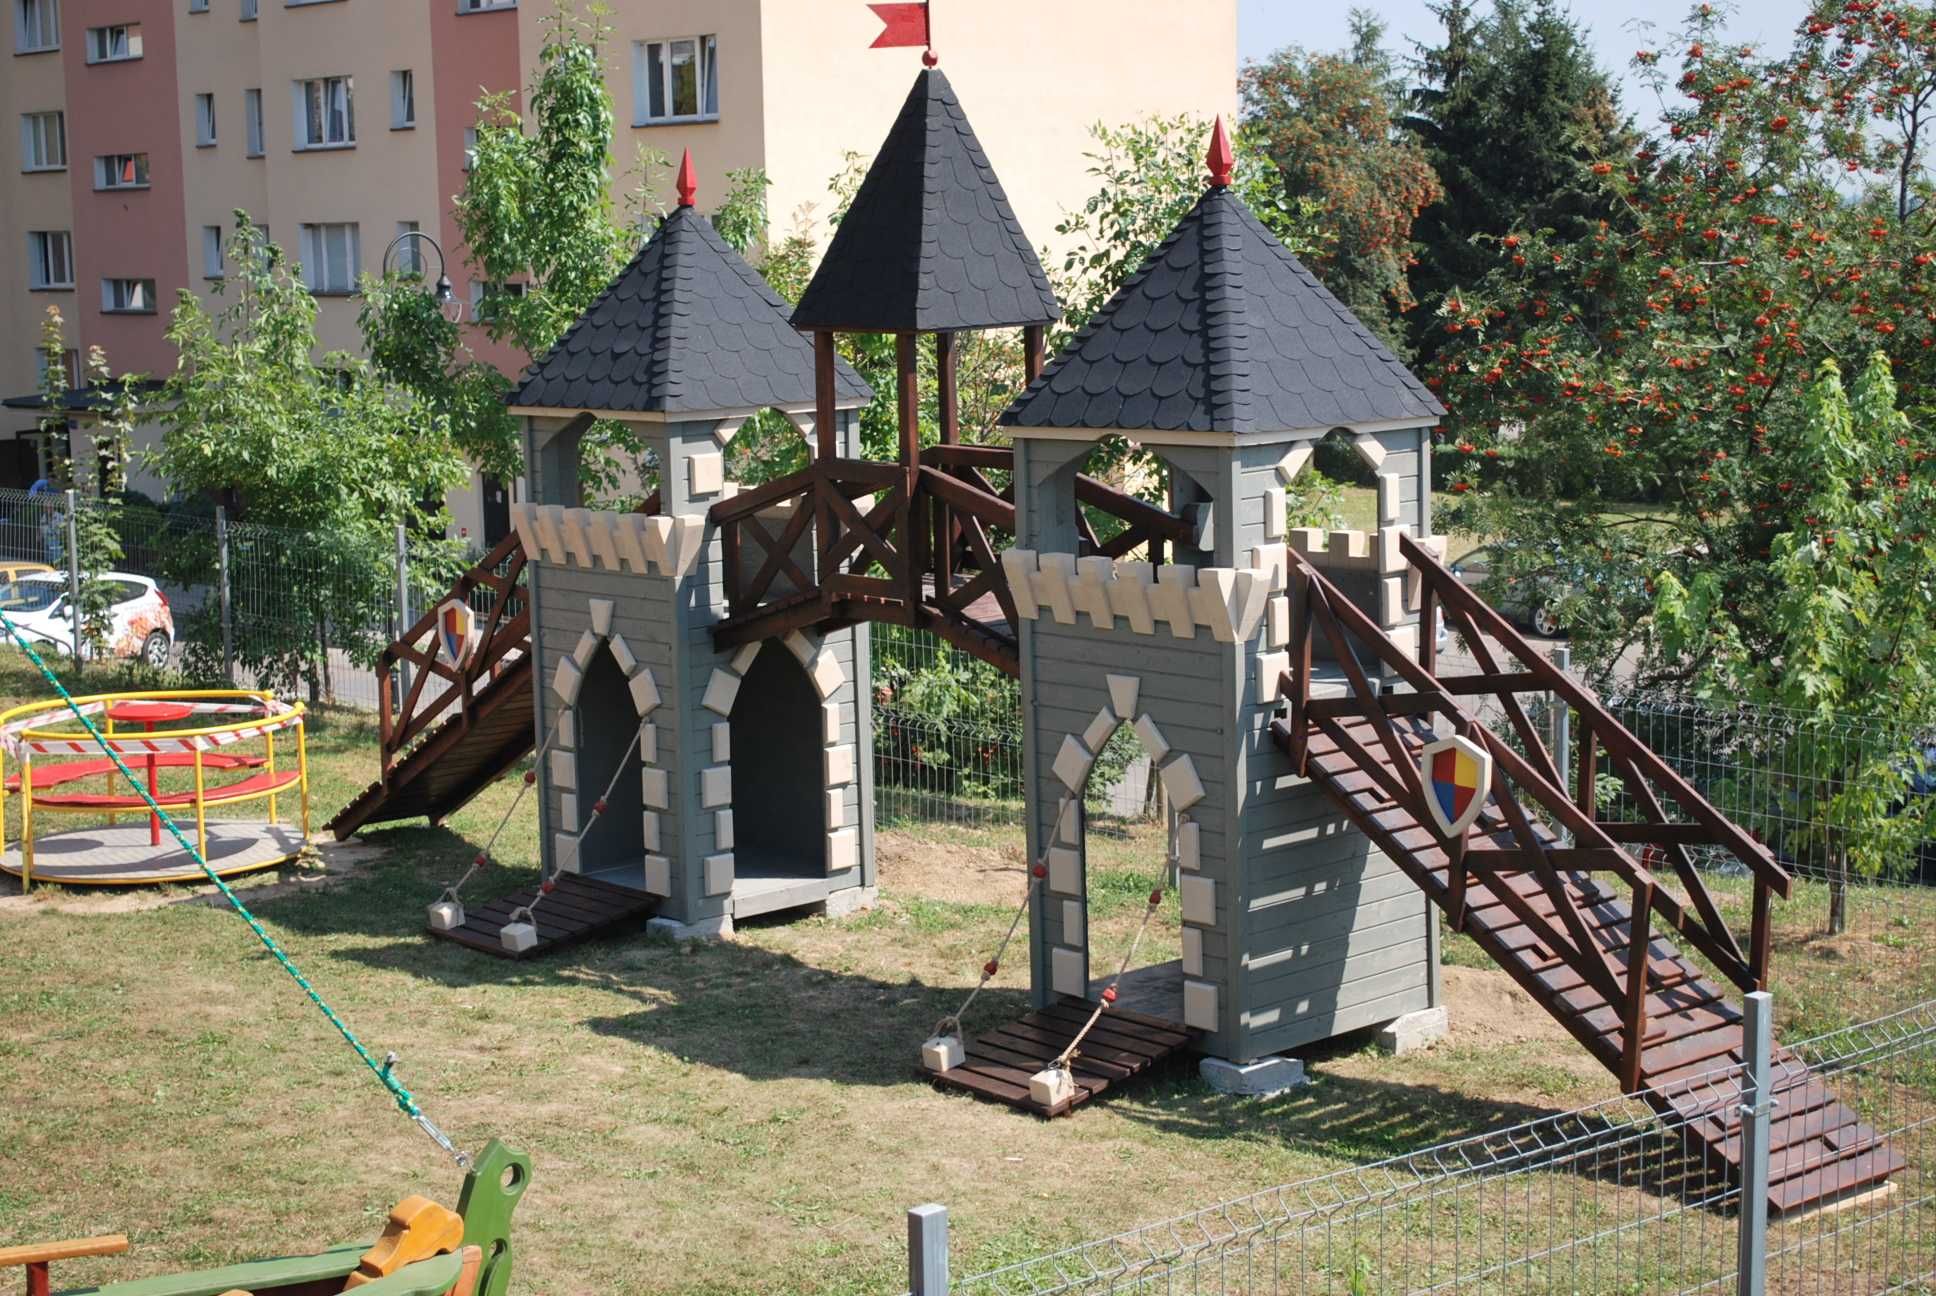 Plac zabaw dla dzieci PZ03 ! Drewniany Zamek dla dzieci!